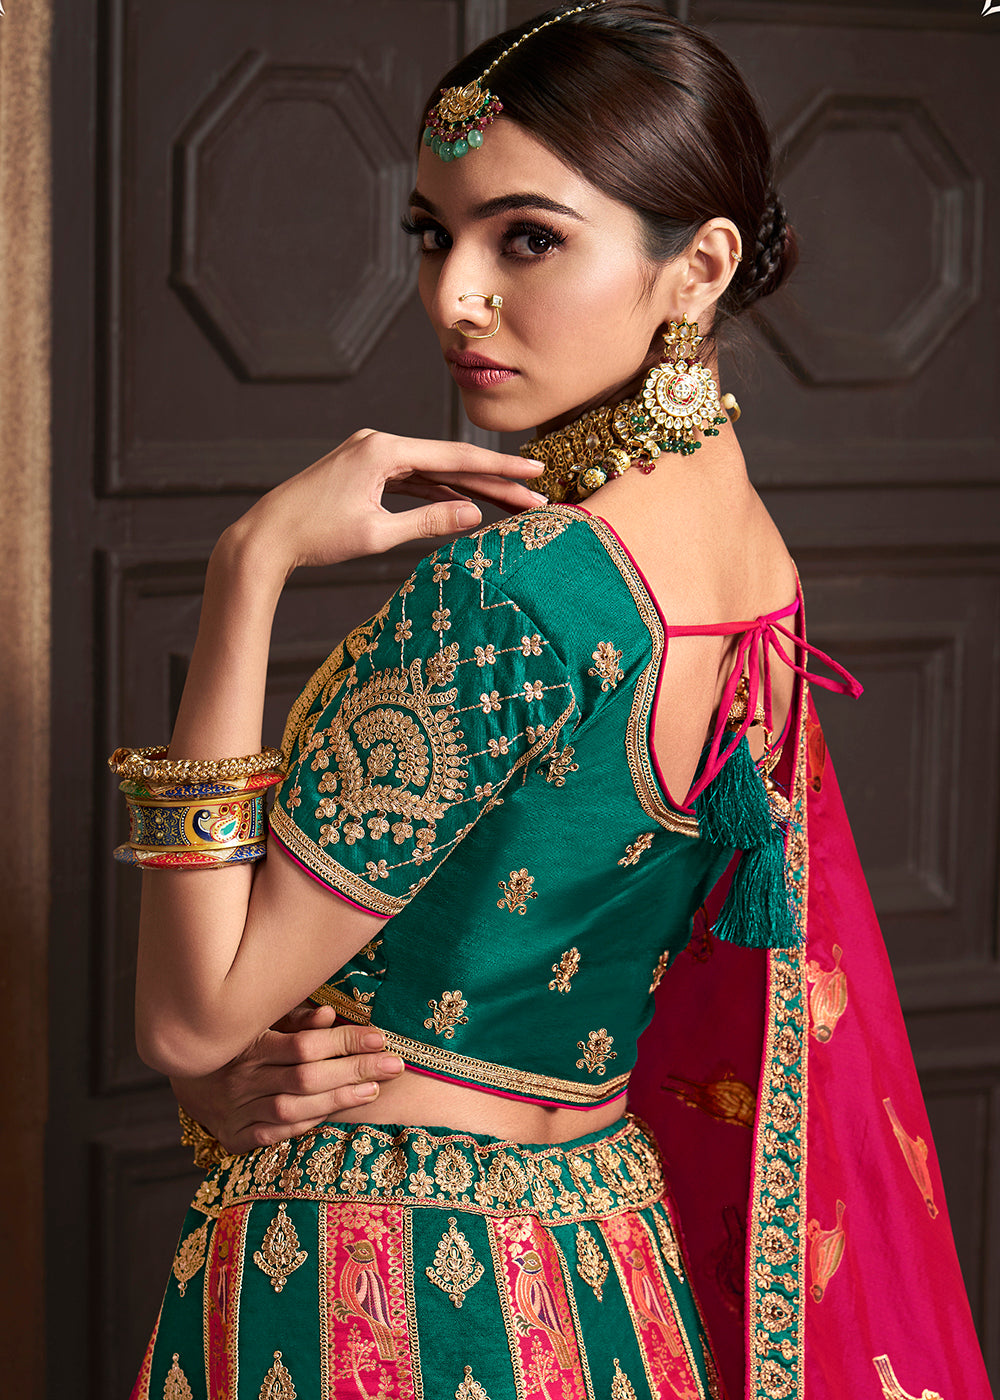 Buy Now Green & Pink Banarasi Silk Bridal Designer Lehenga Choli Online in USA, UK, Canada & Worldwide at Empress Clothing. 